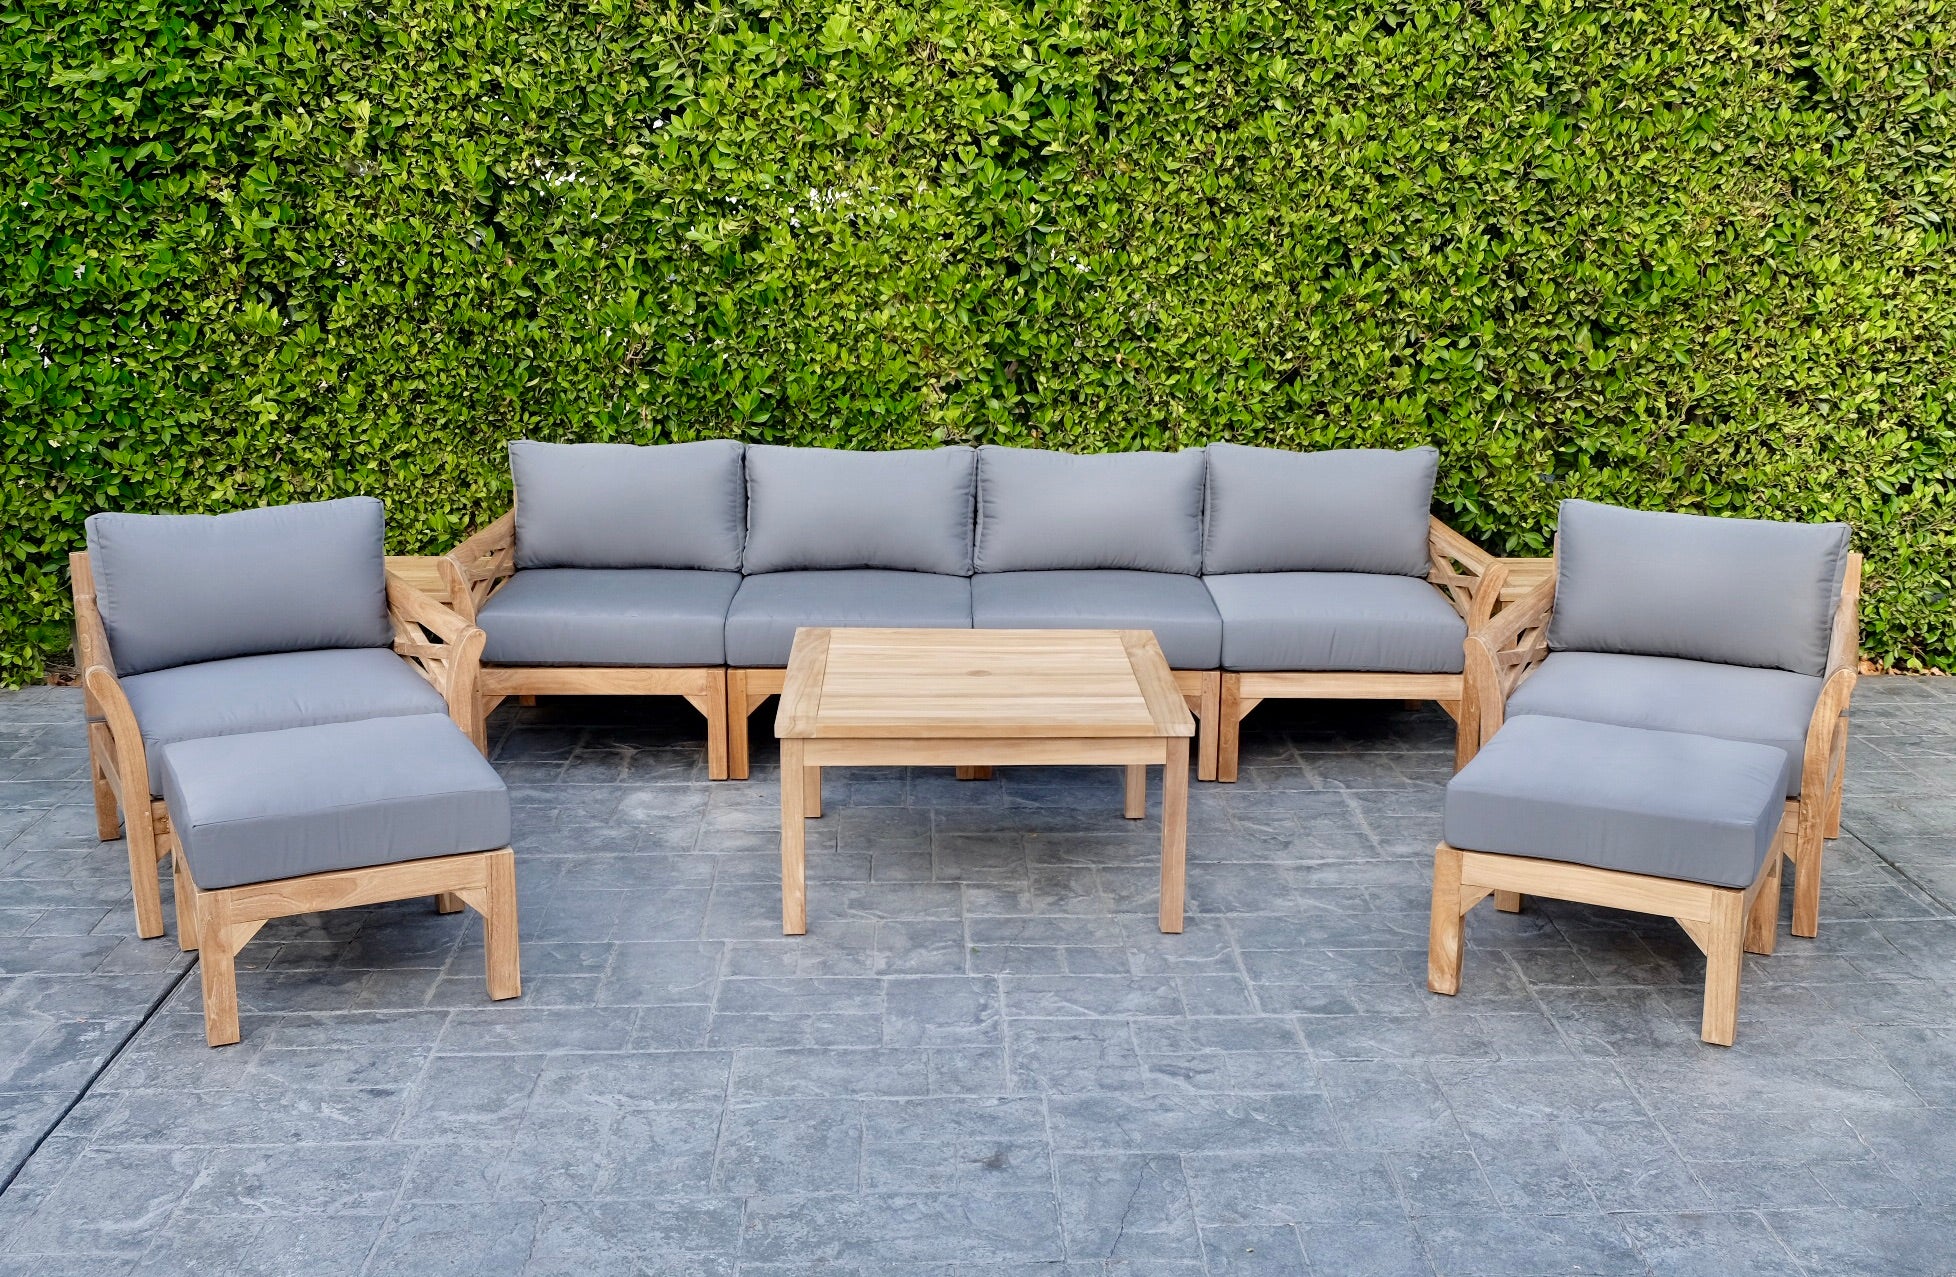 verdund Luik Geaccepteerd Teak Outdoor Lounge Set | Outdoor Deep Seating | Sunbrella Cushion – Willow  Creek Designs